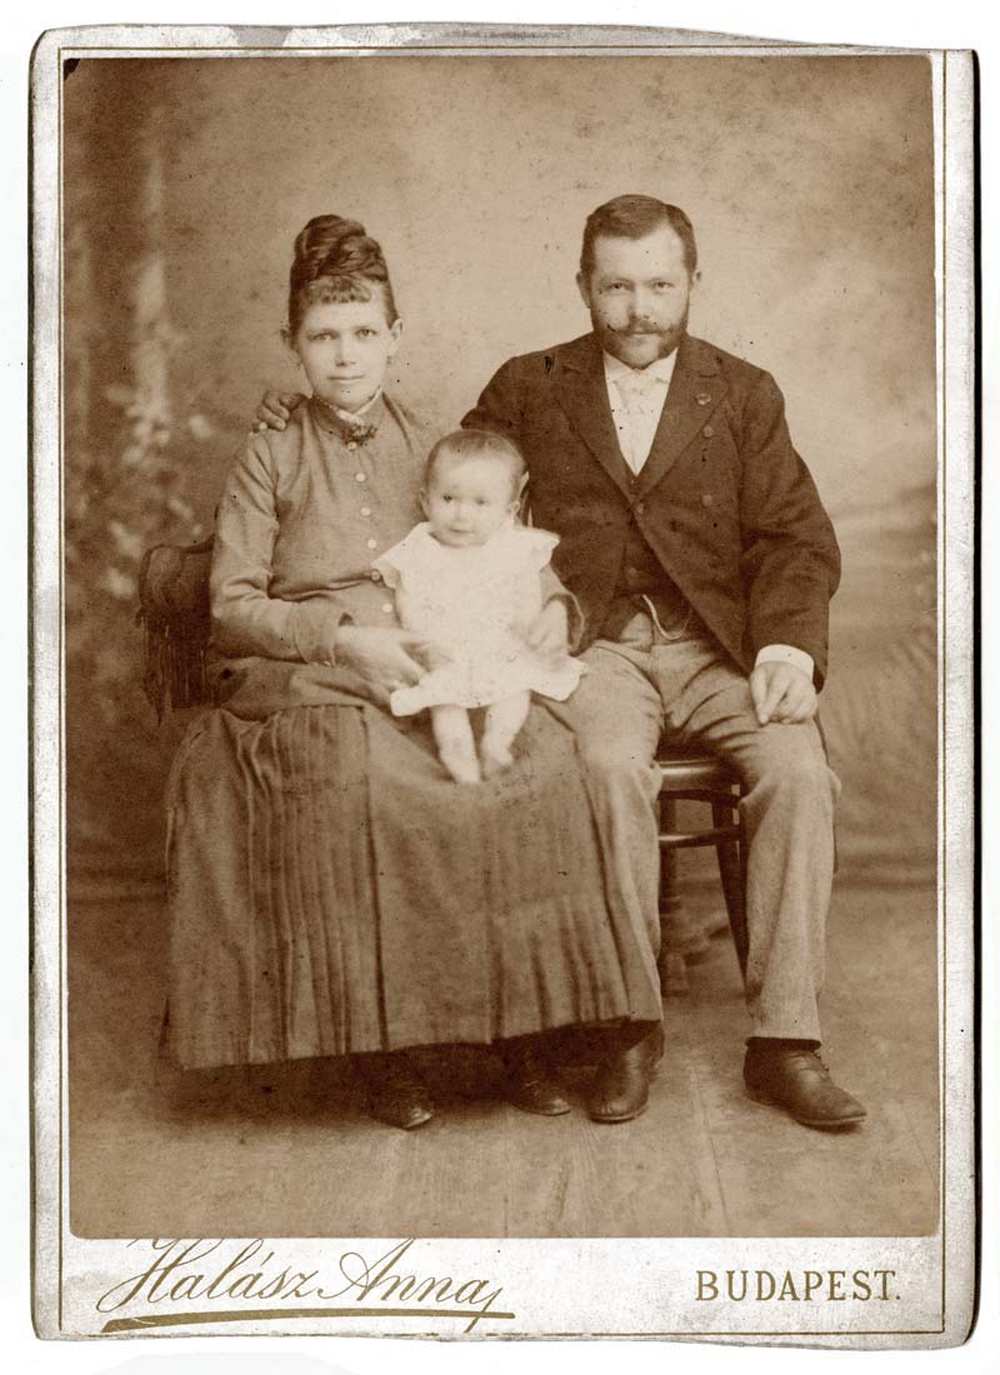 Halász Anna: Háromtagú család műtermi képe, 1880. – Történeti Fénykép- és Videótár. Jelzet: FTB 00041.